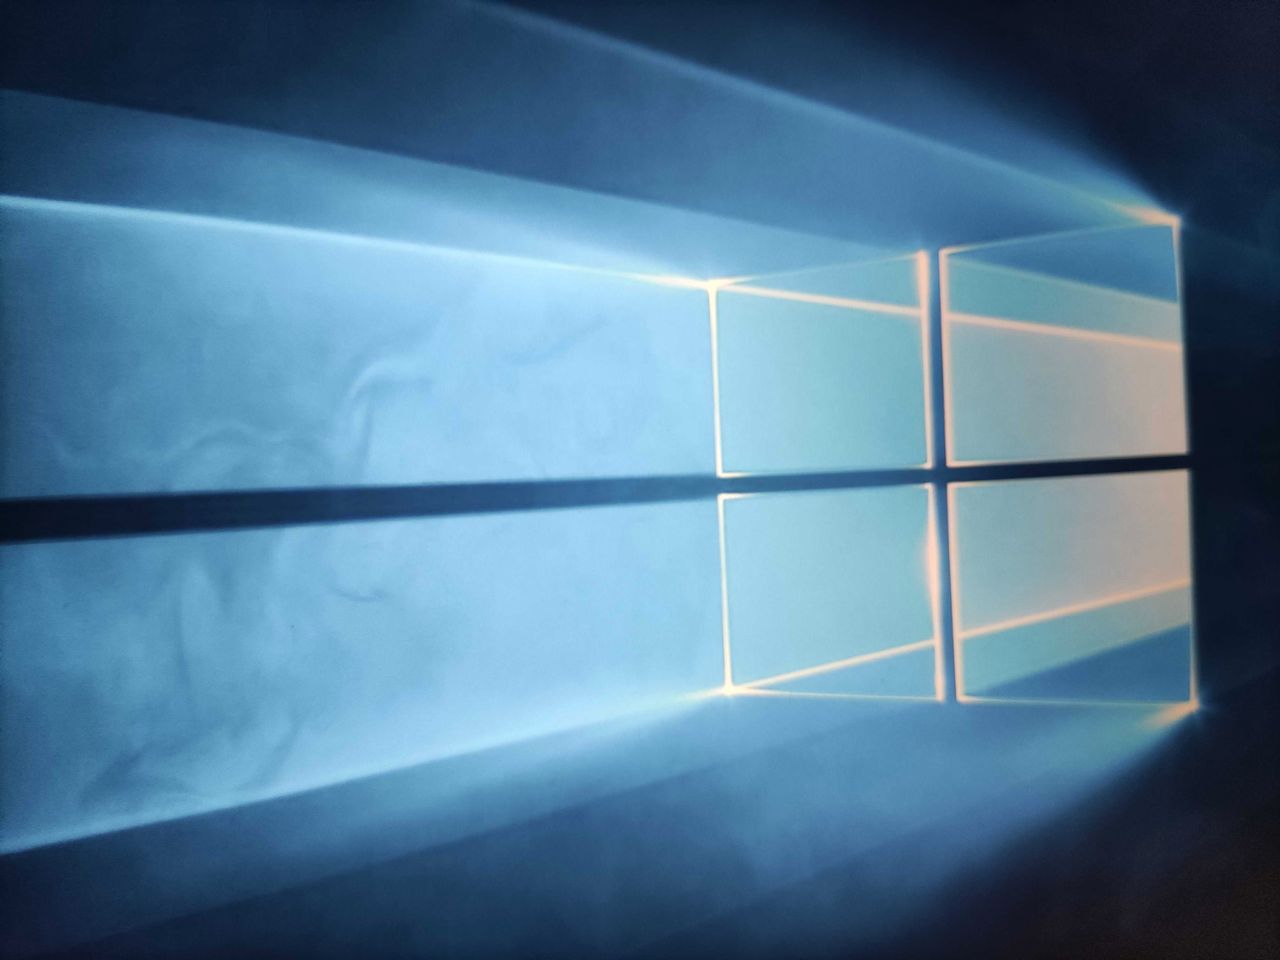 Najlepsze antywirusy na Windows 10. Windows Defender radzi sobie zaskakująco dobrze